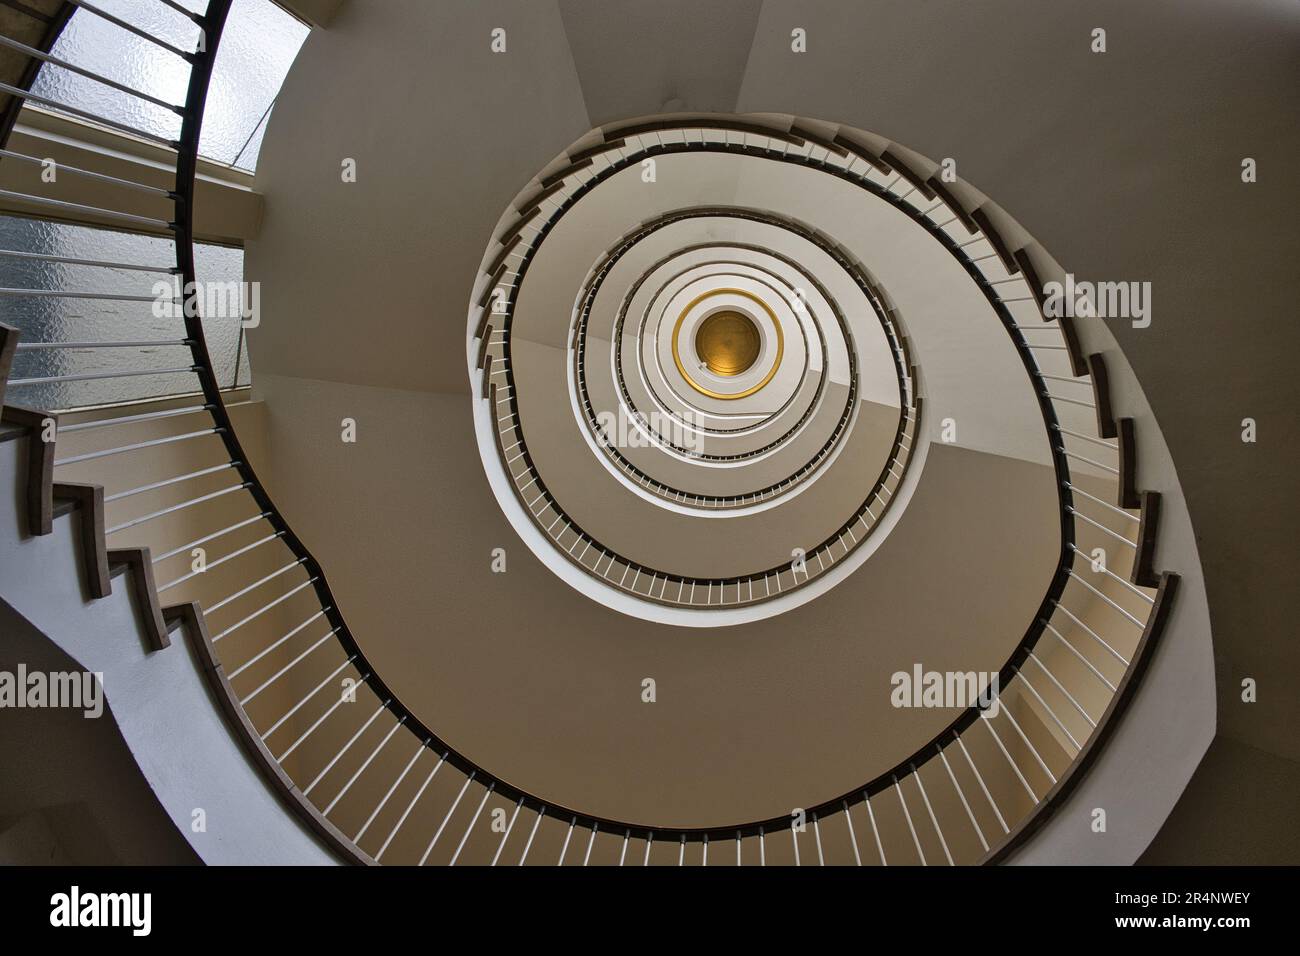 Hamburg, Hansestadt, Norddeutschland, Flur, floor, home, house, Haus, construction, detail,stairs, Treppenhaus, staircase, Stairway, Stock Photo